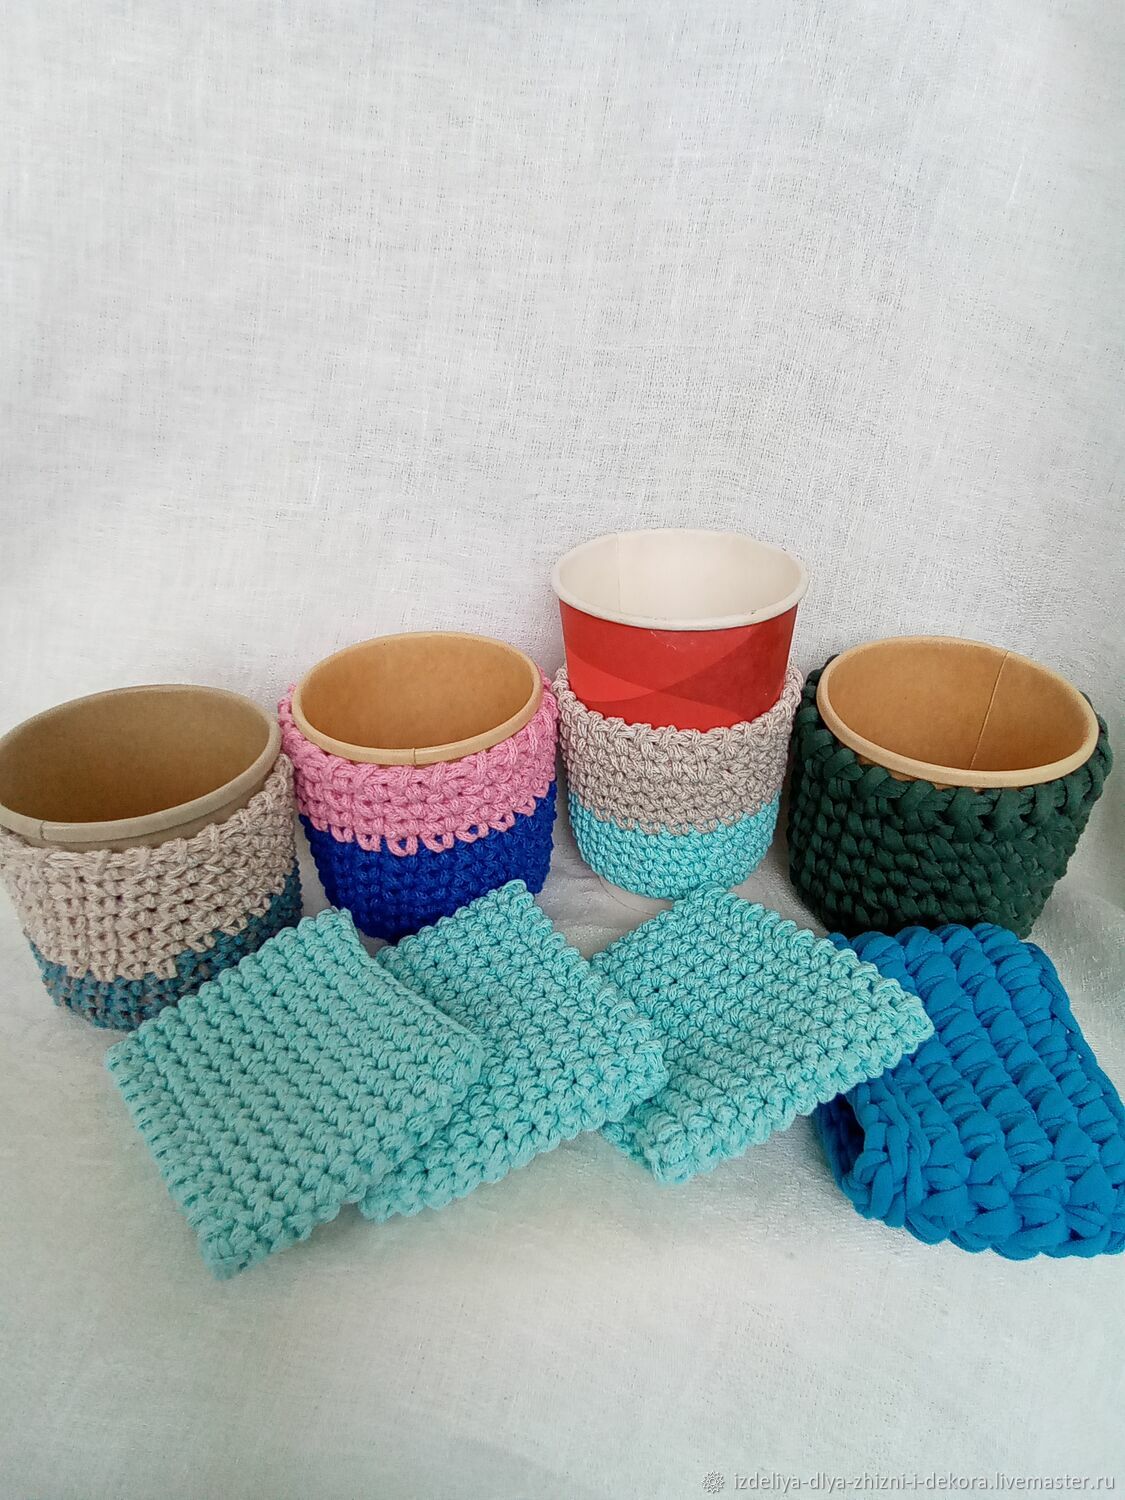 Air cups